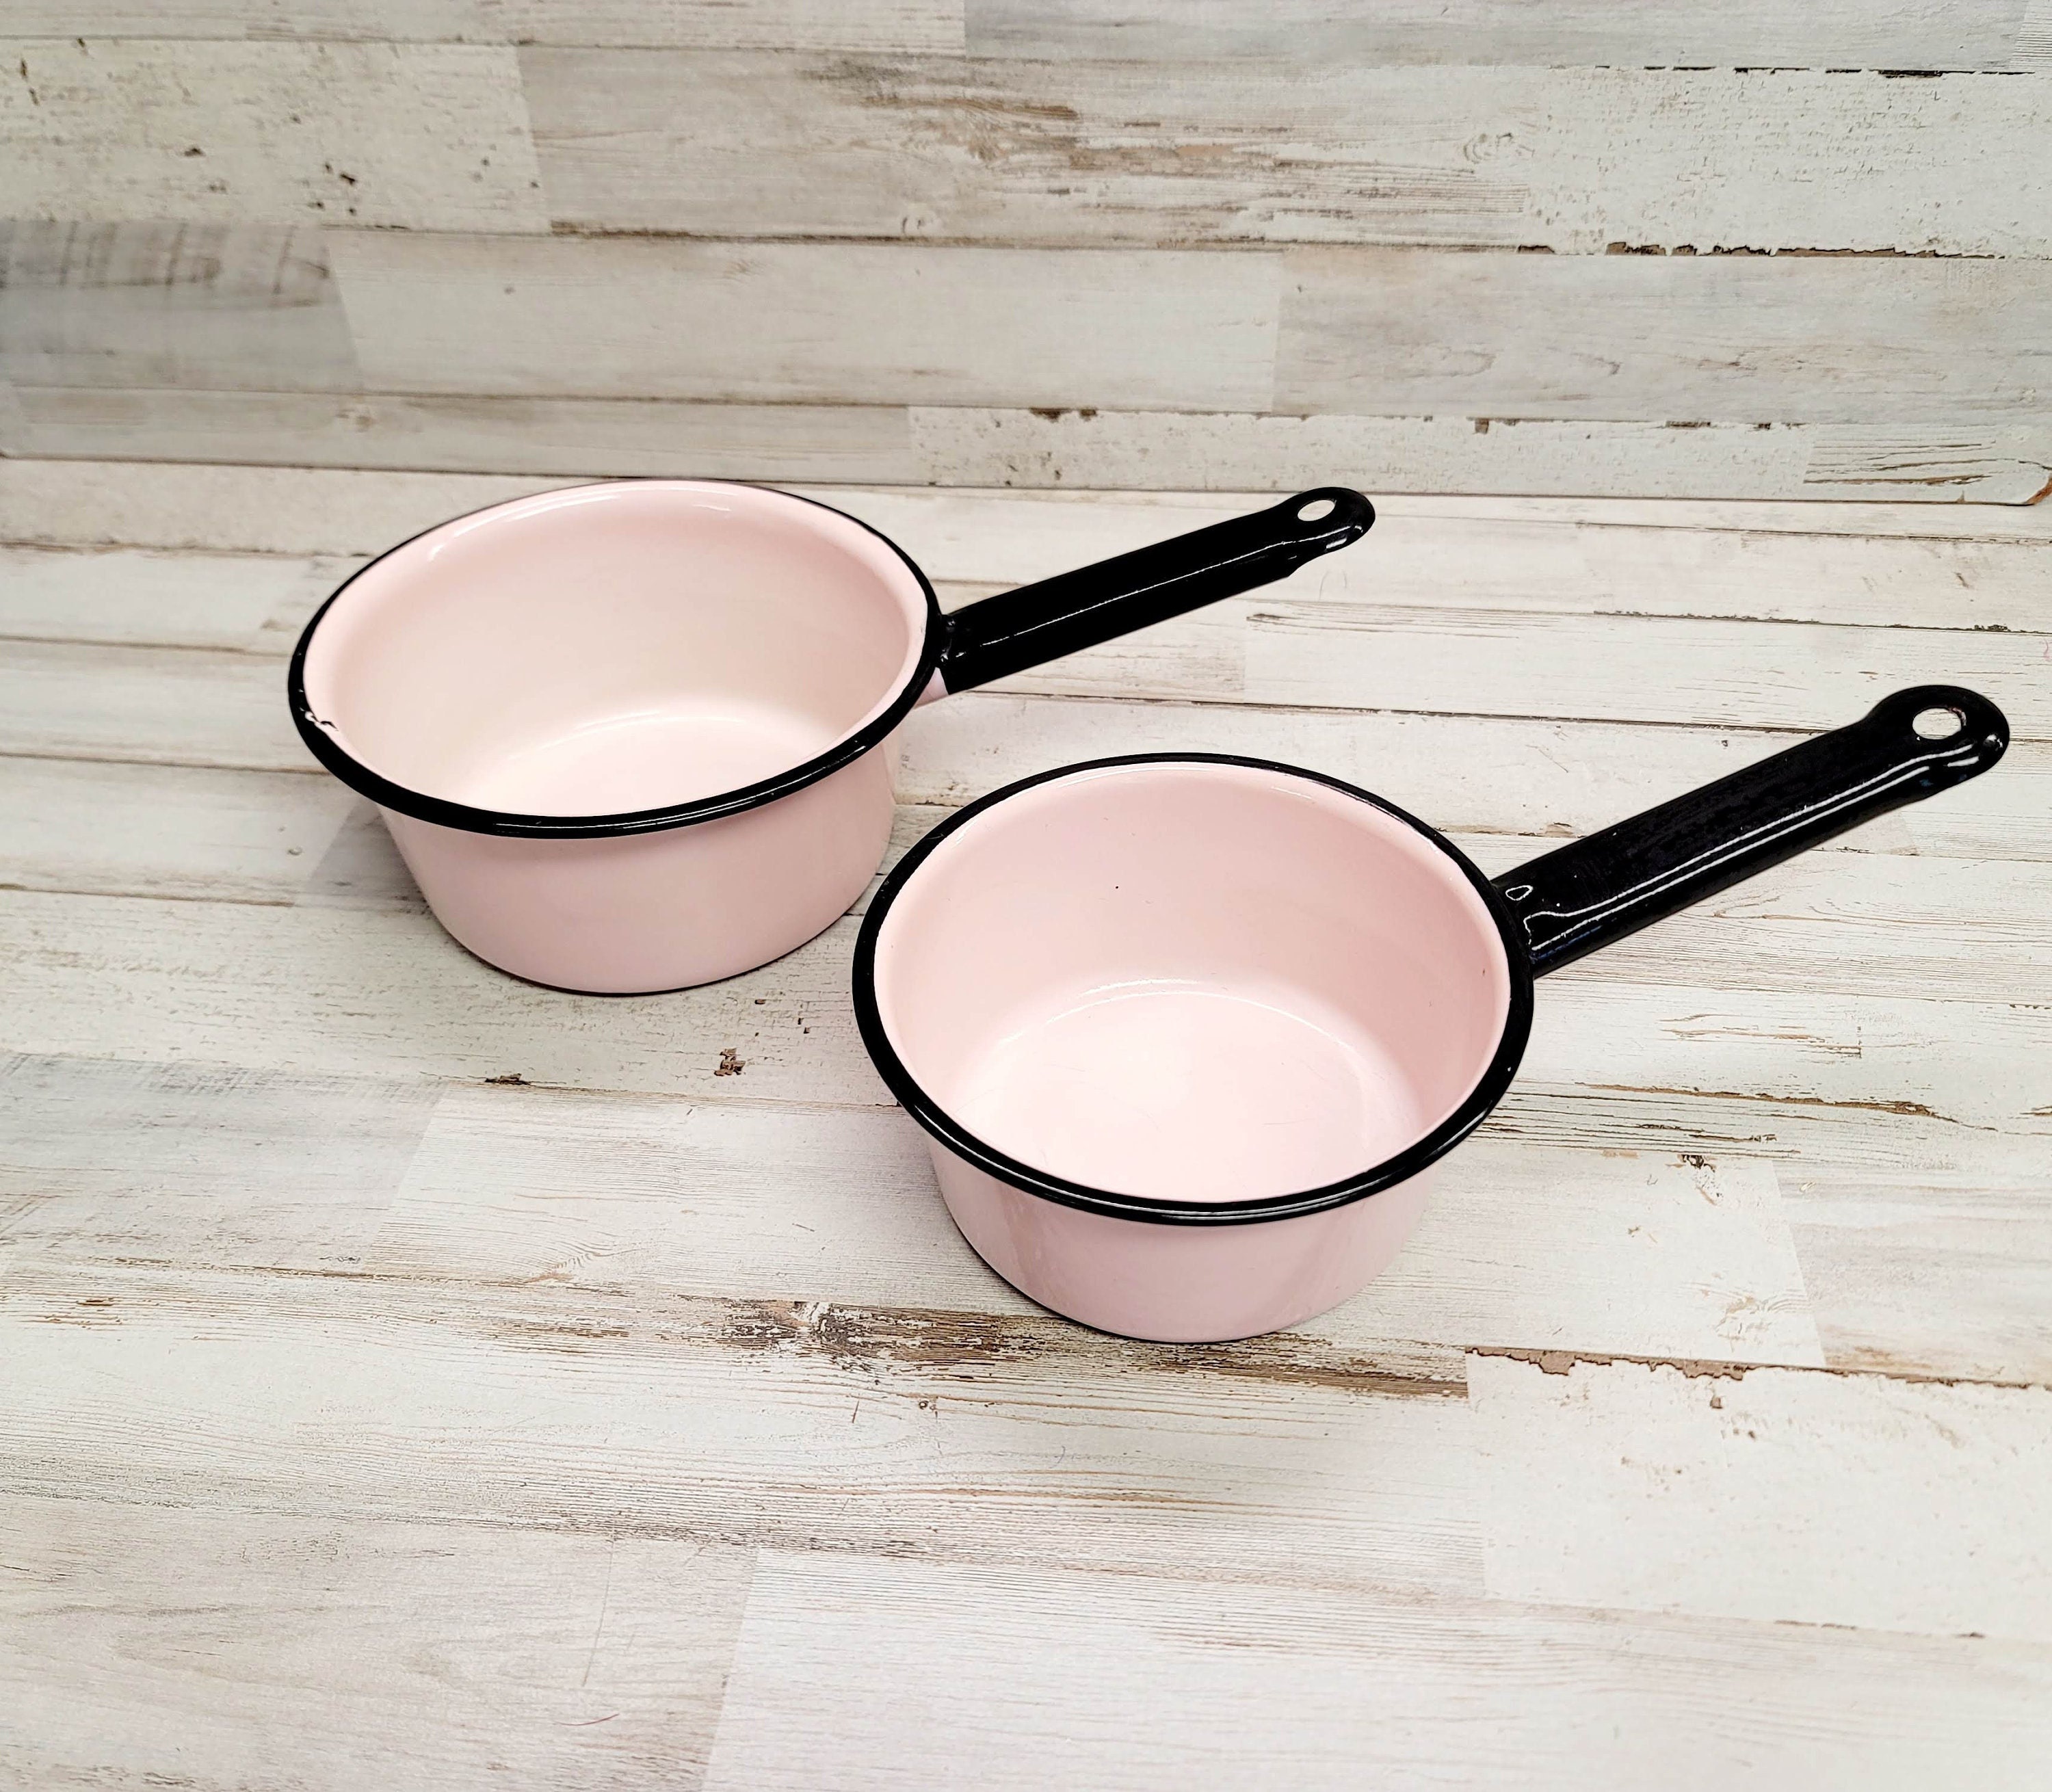 Vintage Pink Enamel Ware Sauce Pans Set of 3 